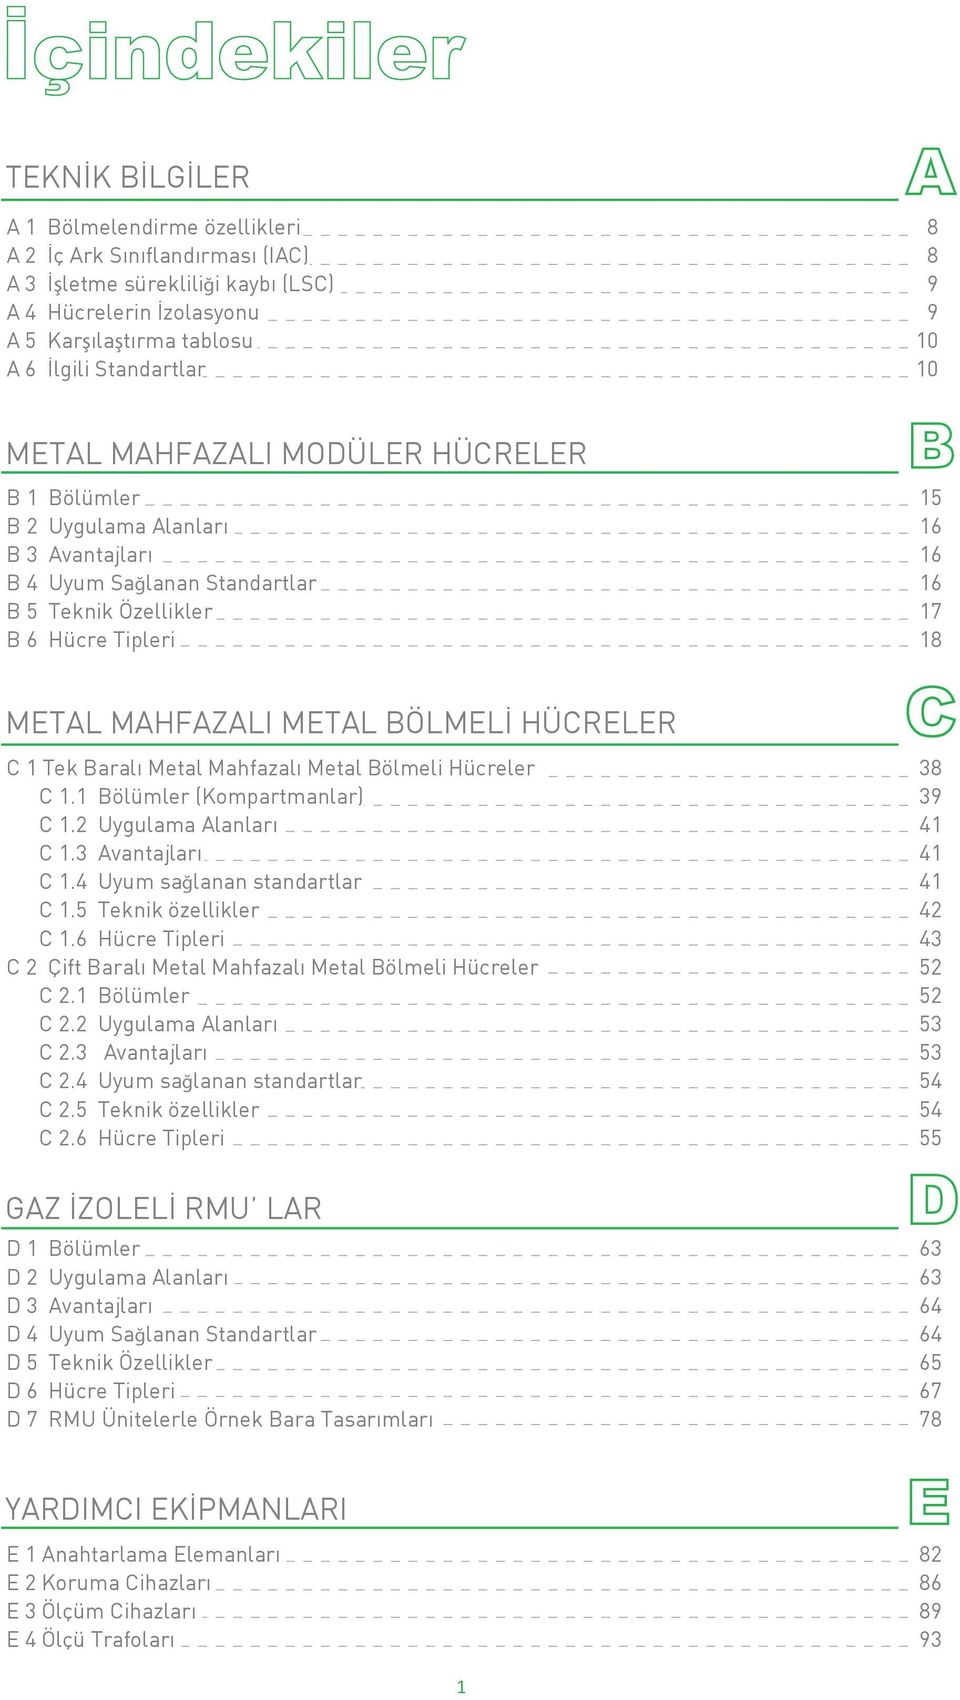 HÜCRELER C 1 Tek Baral Metal Mahfazal Metal Bölmeli Hücreler 38 C 1.1 Bölümler (Kompartmanlar) 39 C 1.2 Uygulama Alanları 41 C 1.3 Avantajlar 41 C 1.4 Uyum sağlanan standartlar 41 C 1.